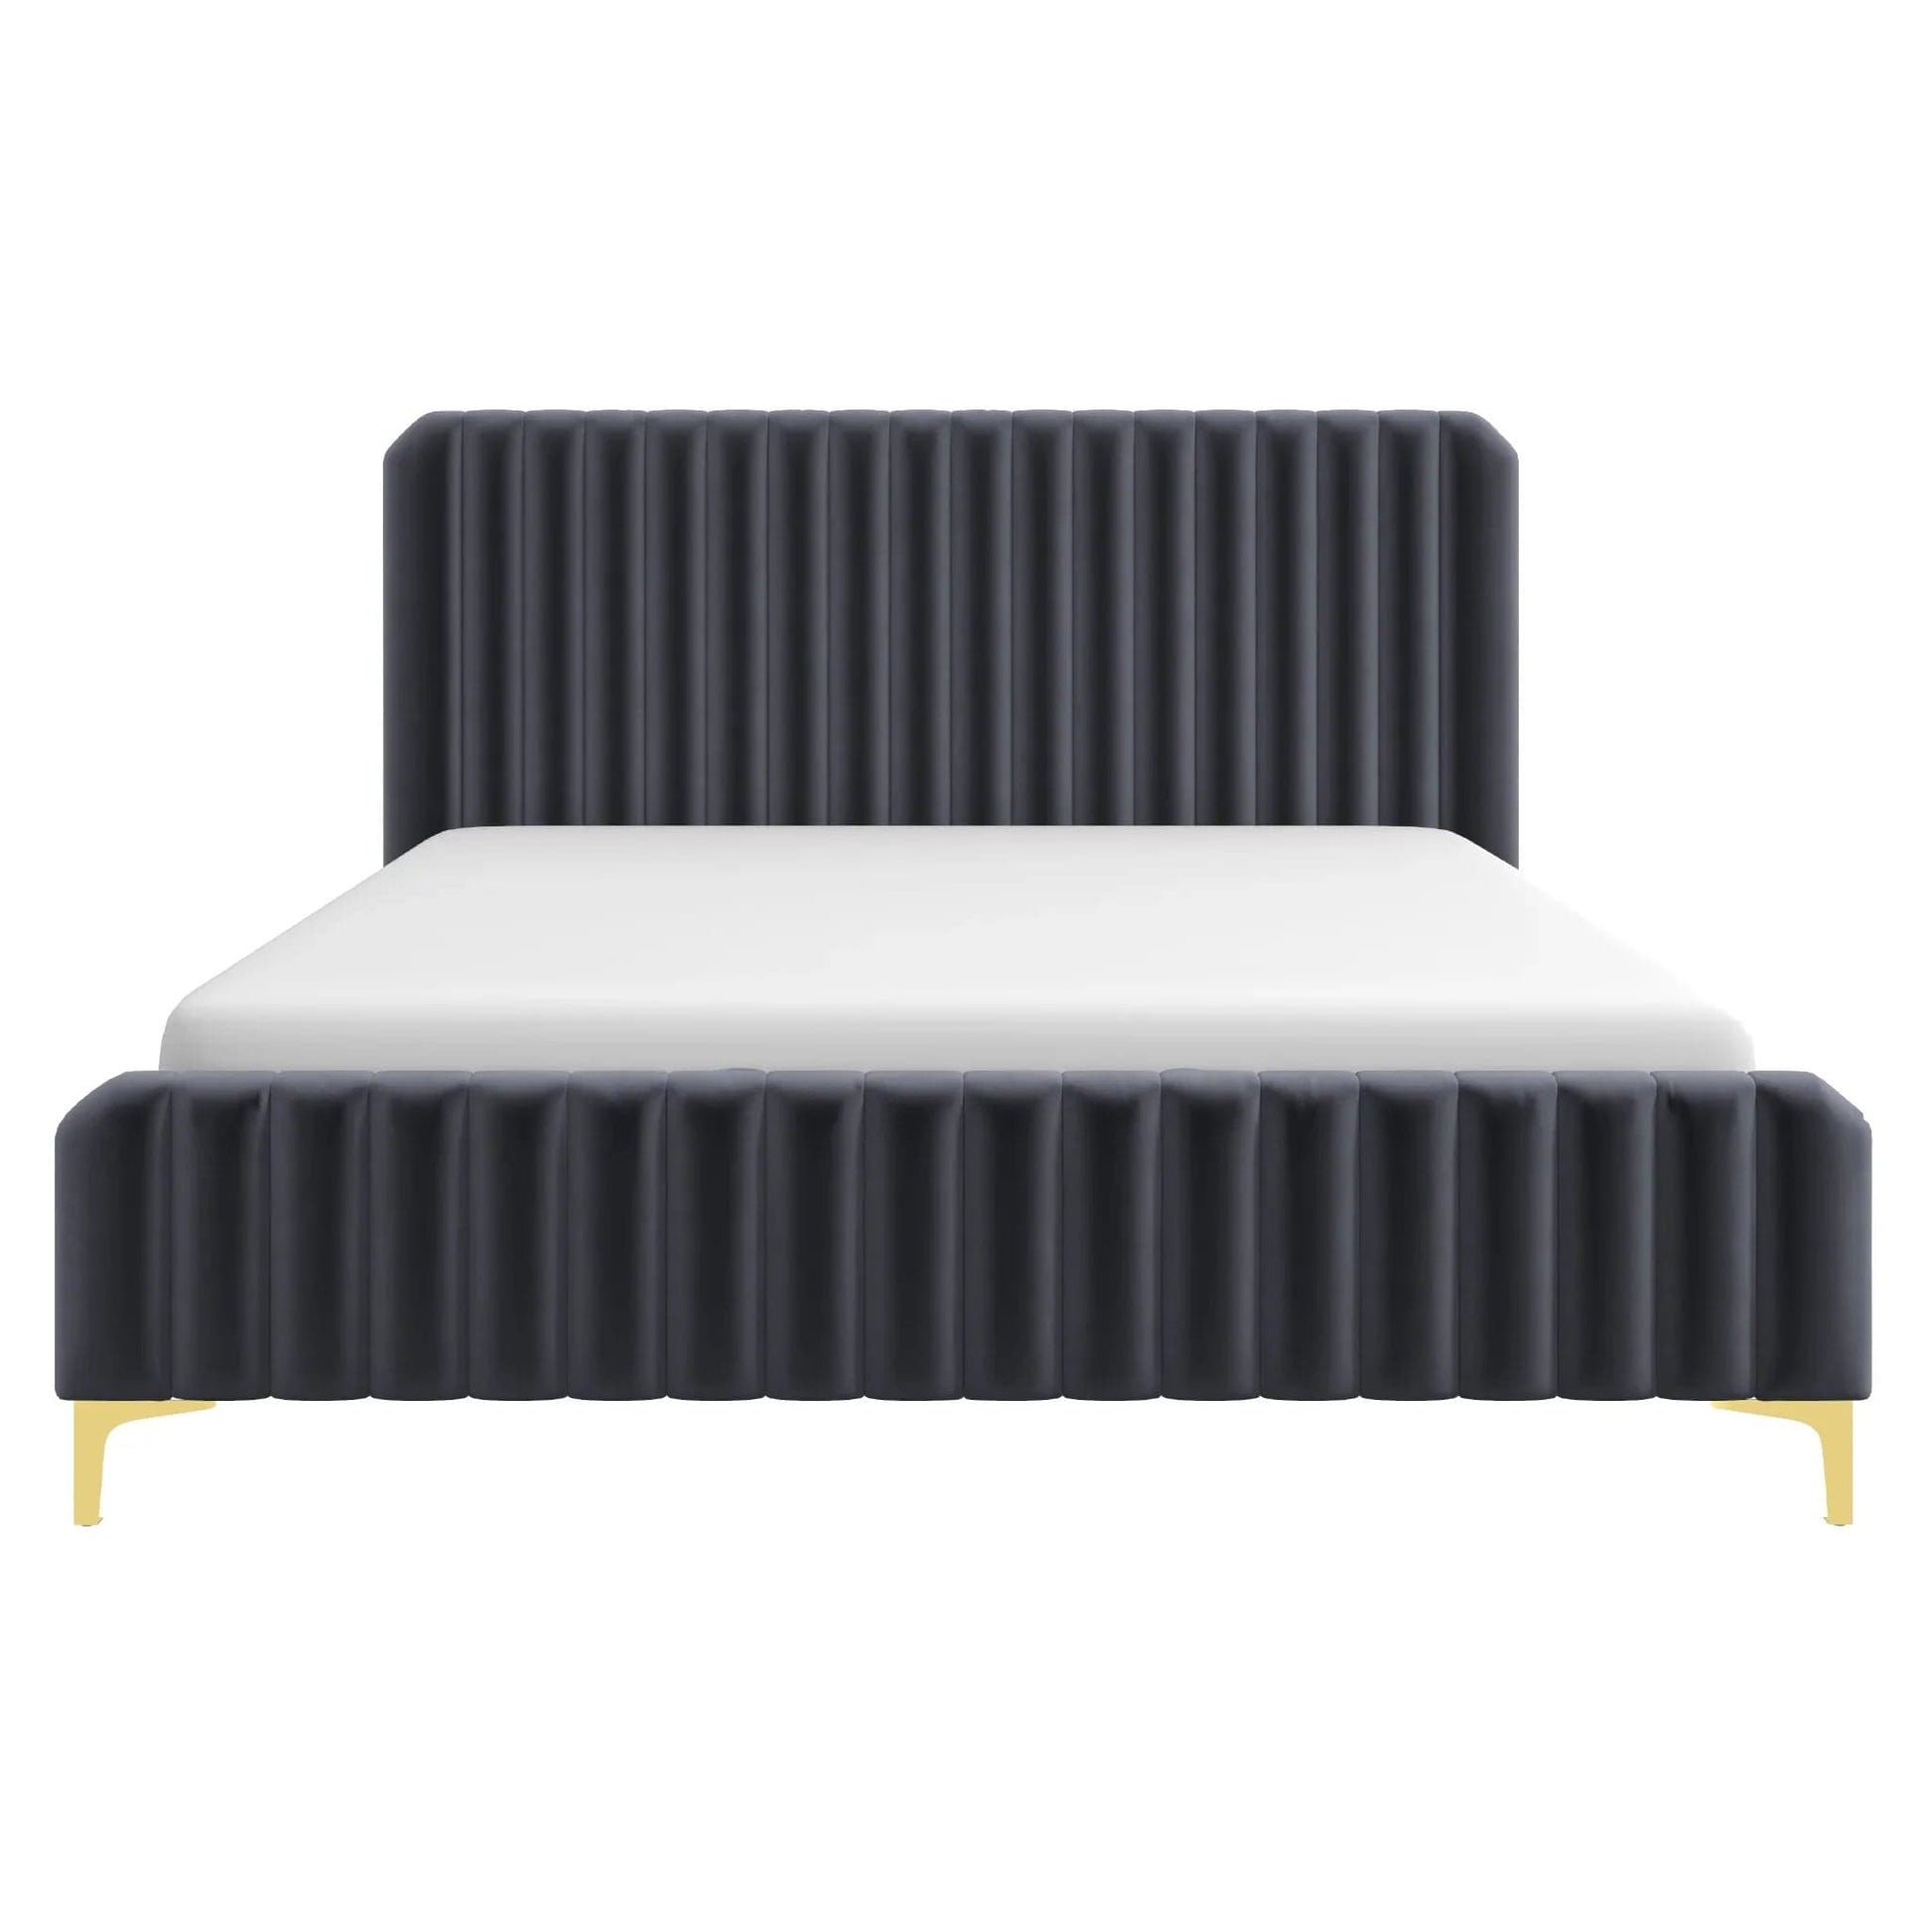 Ashcroft Furniture Co Bed King / Grey Bethany Velvet Upholstered Platform Bed